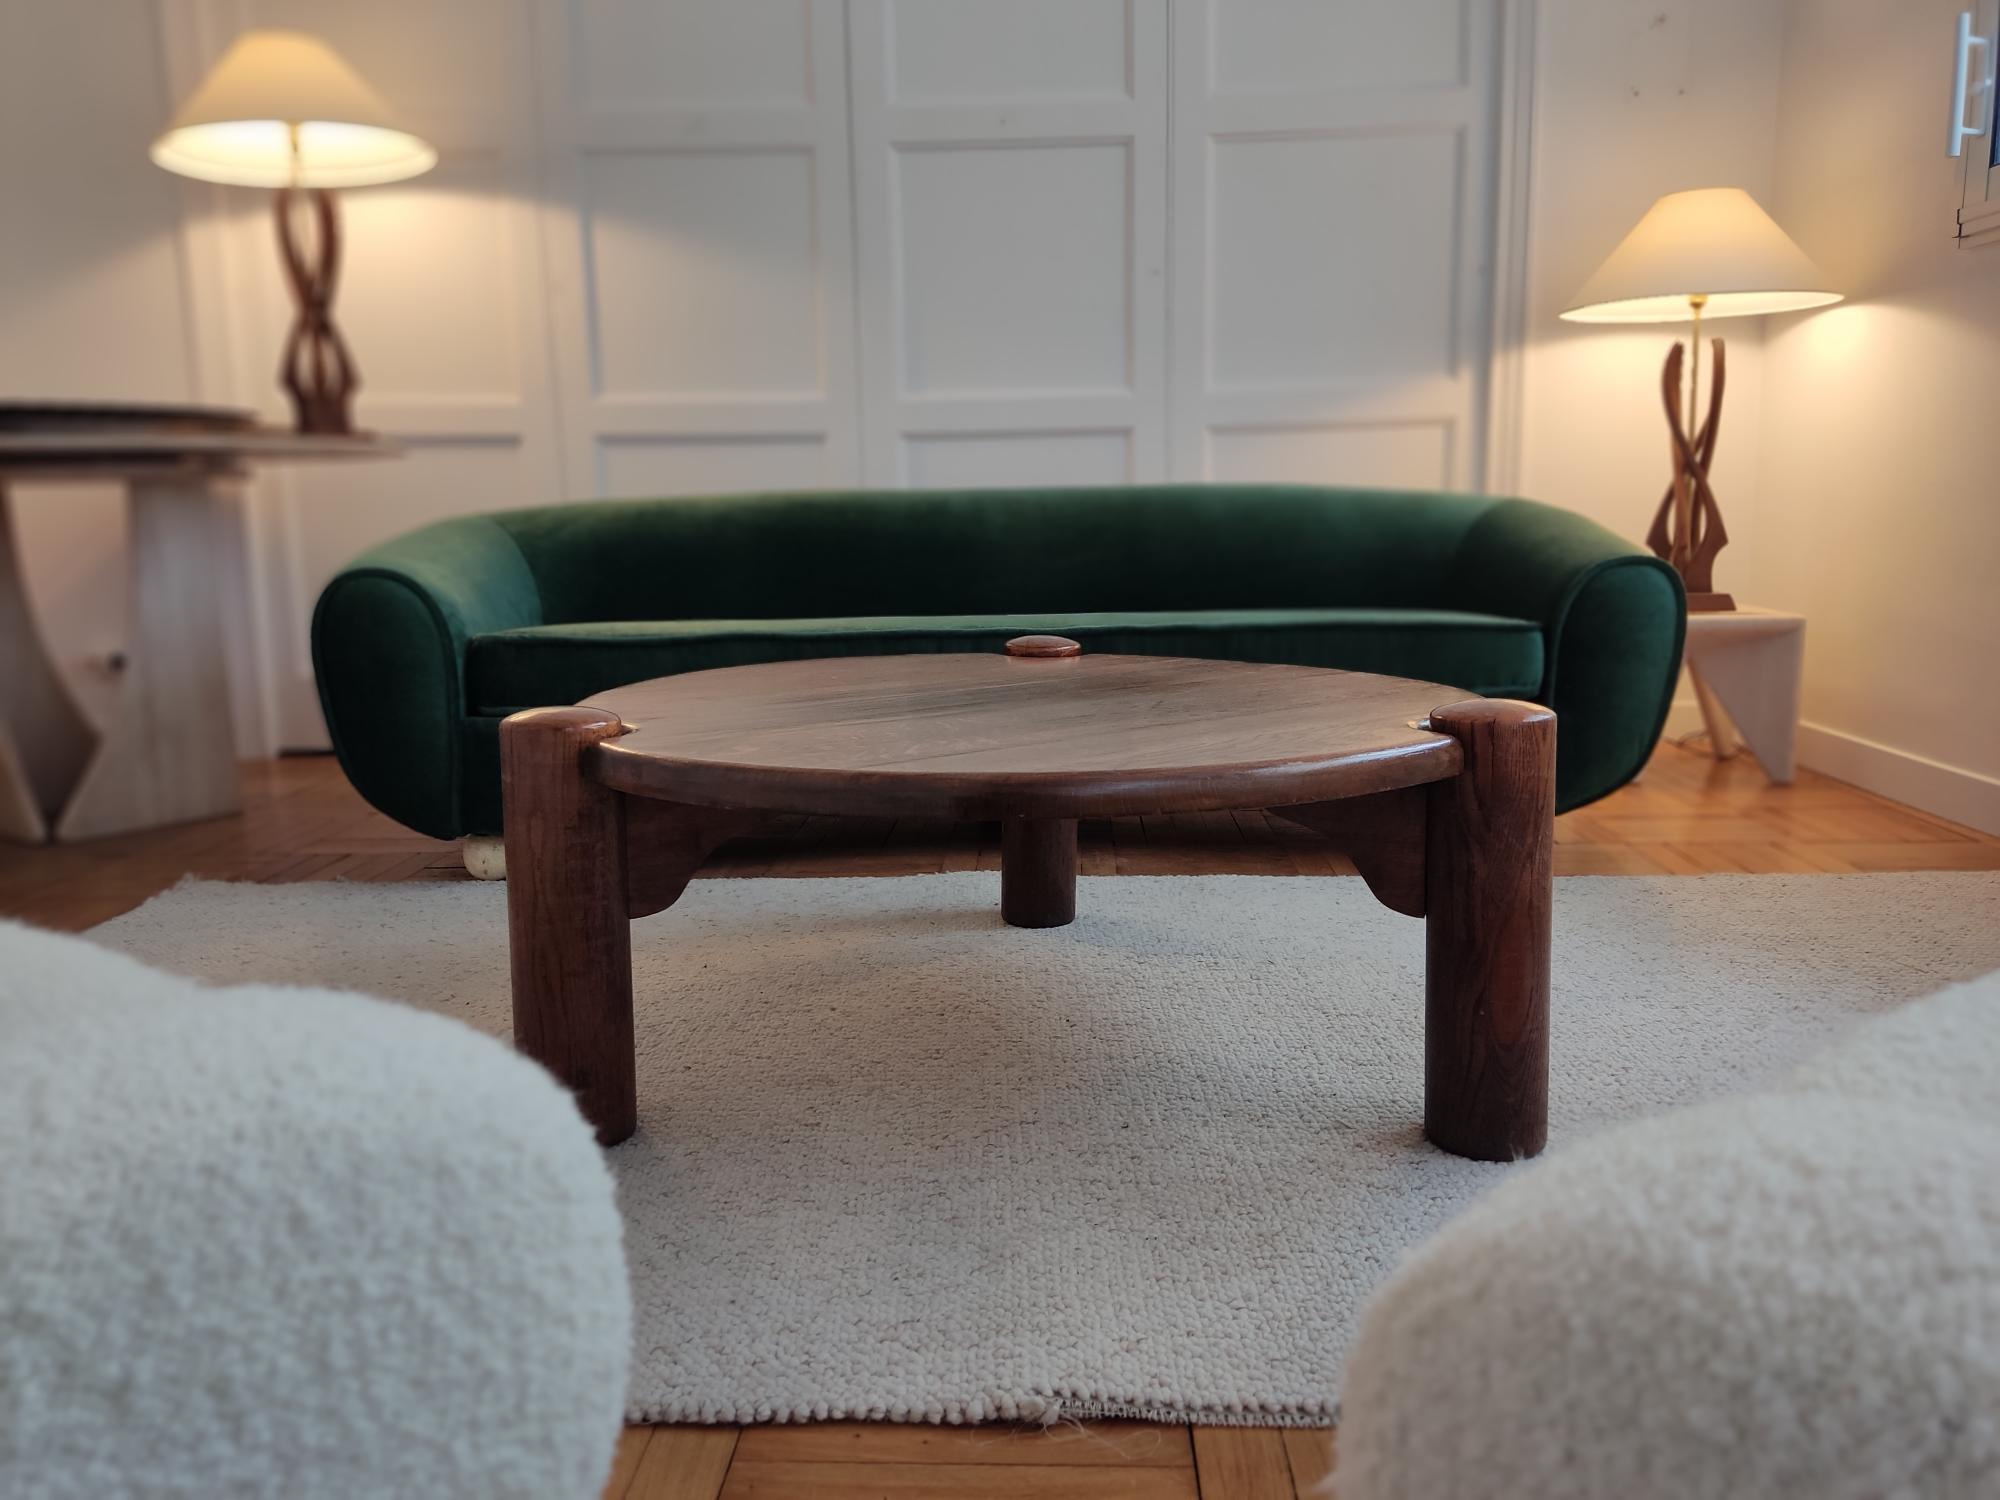 Dreibeiniger und runder Couchtisch aus Eiche aus den 1960er Jahren.
Die zylindrischen Beine passen sich von außen an die runde Form des Tisches an. Diese Koketterie sowie die schönen Proportionen verleihen diesem Edelholztisch viel Stil.

